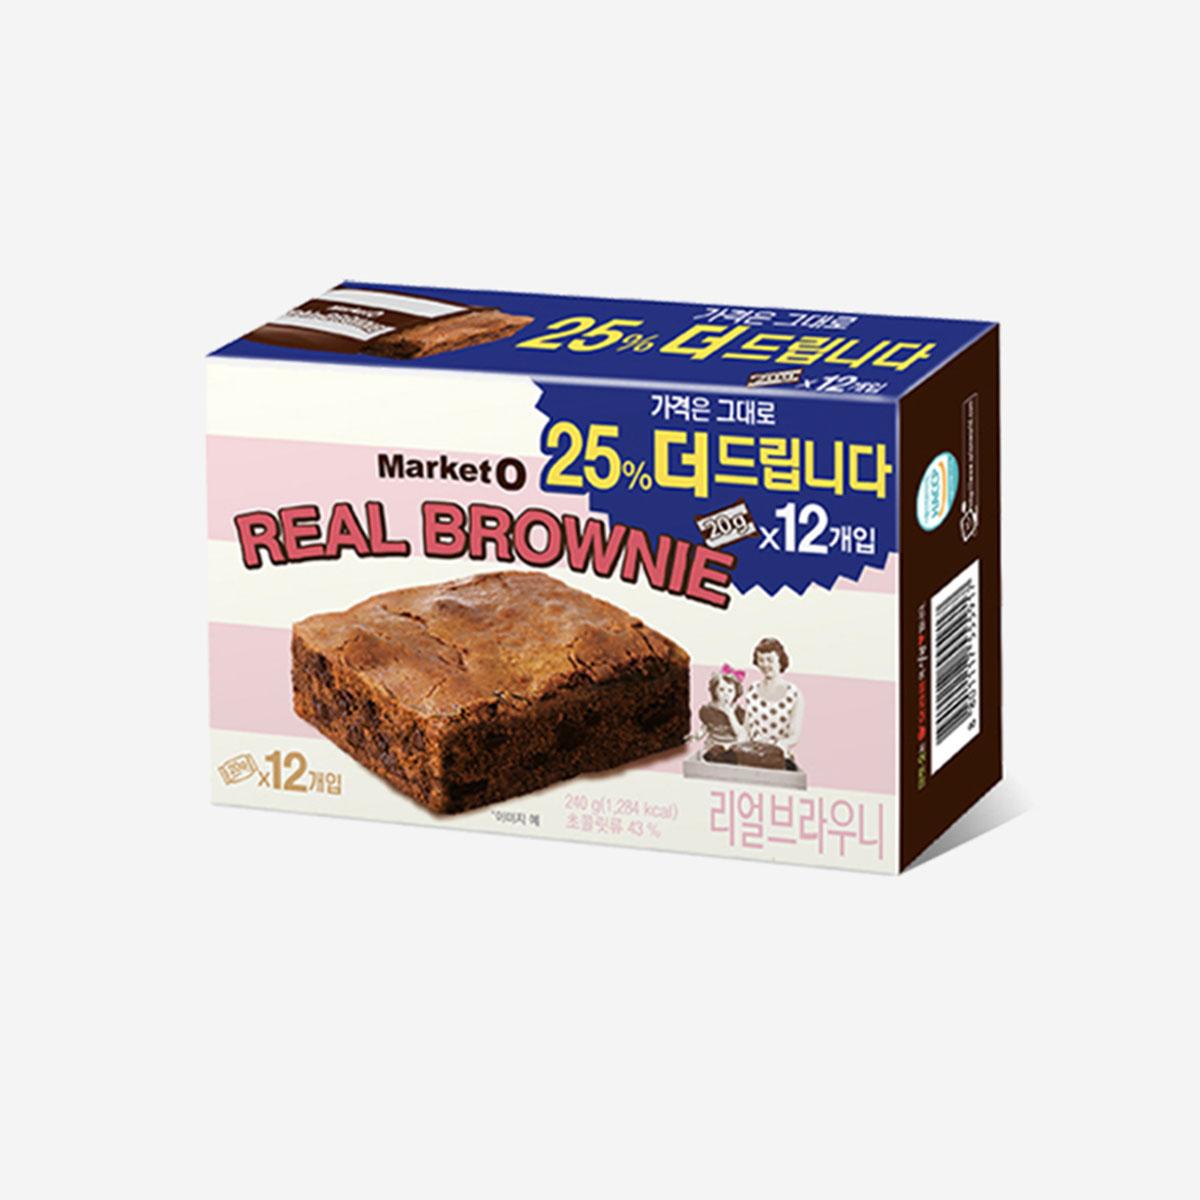 Real Brownie Original (6 packs)